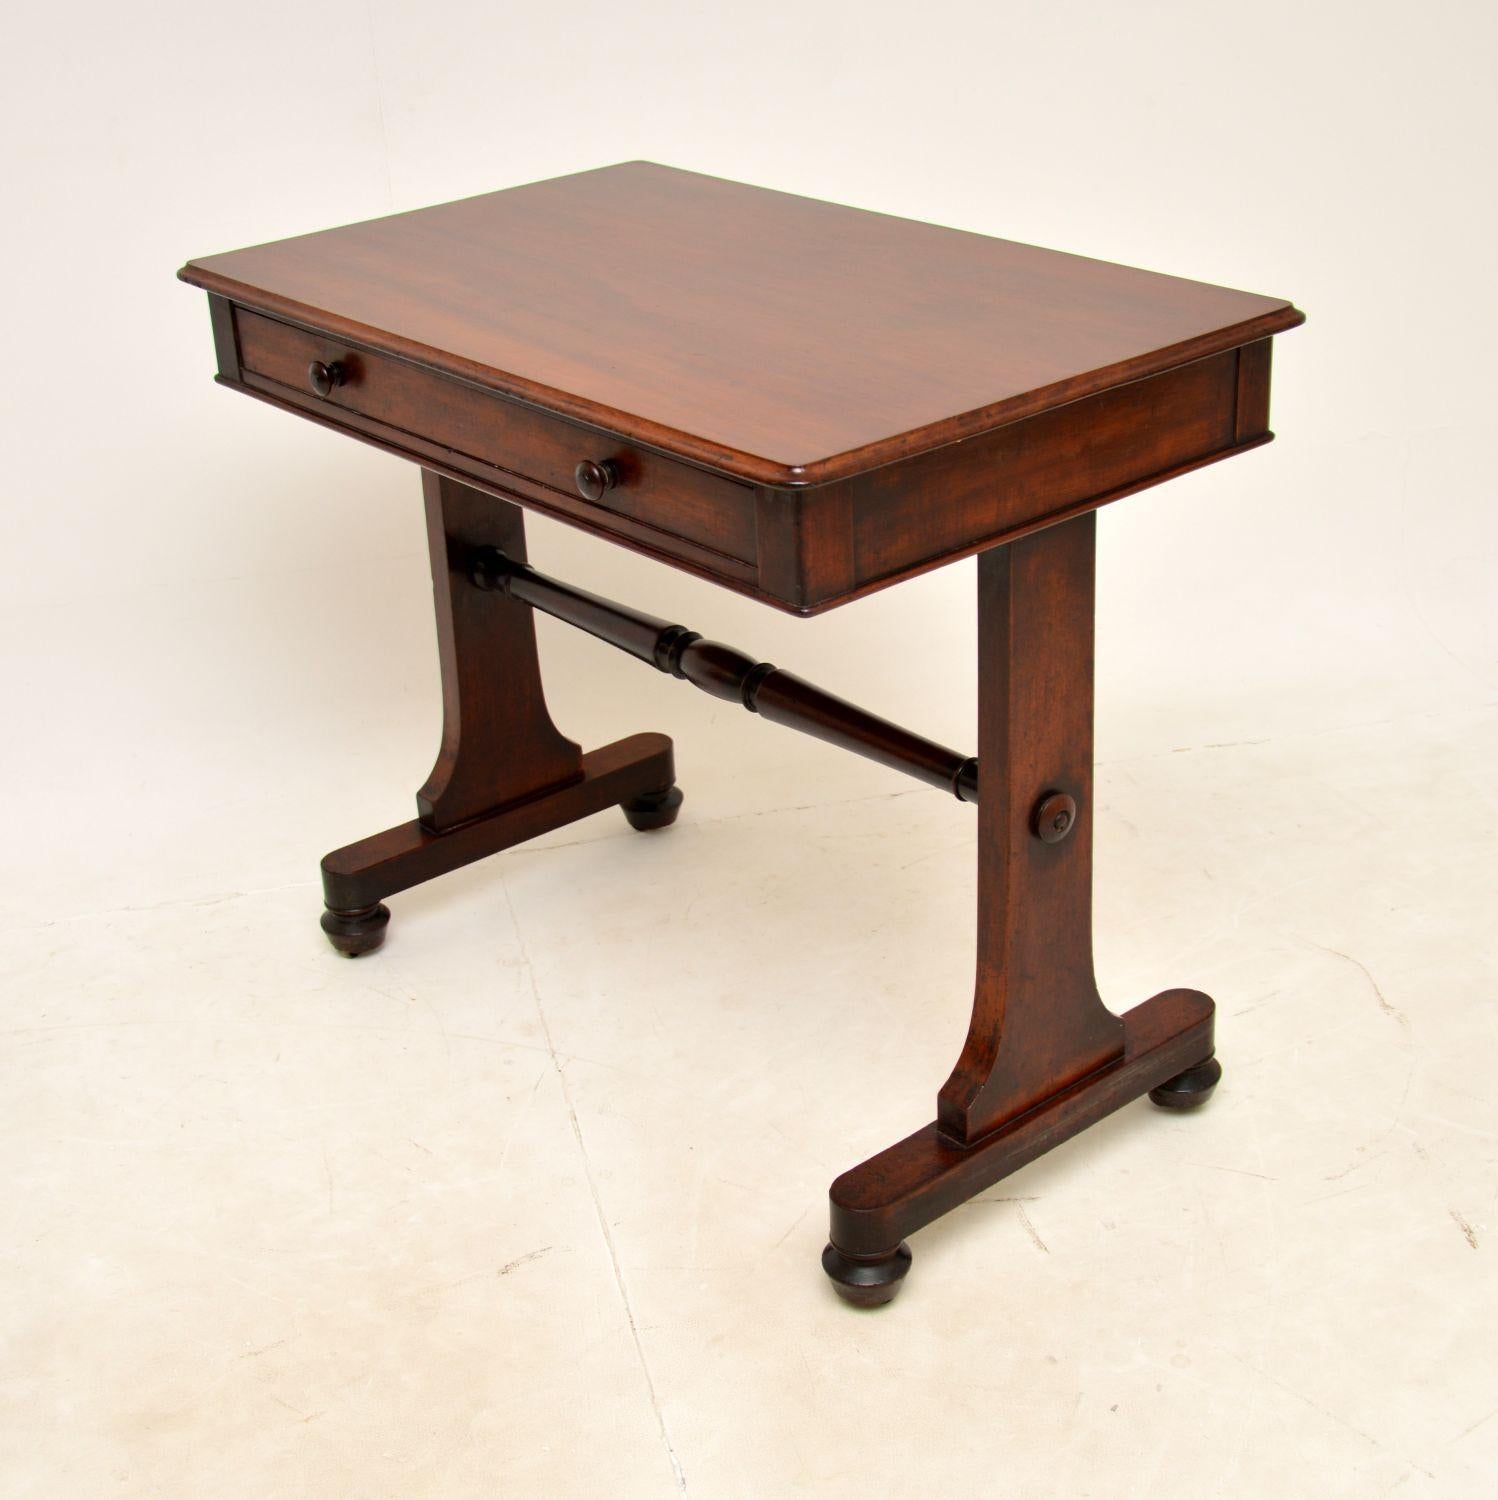 British Antique William iv Writing Table / Desk